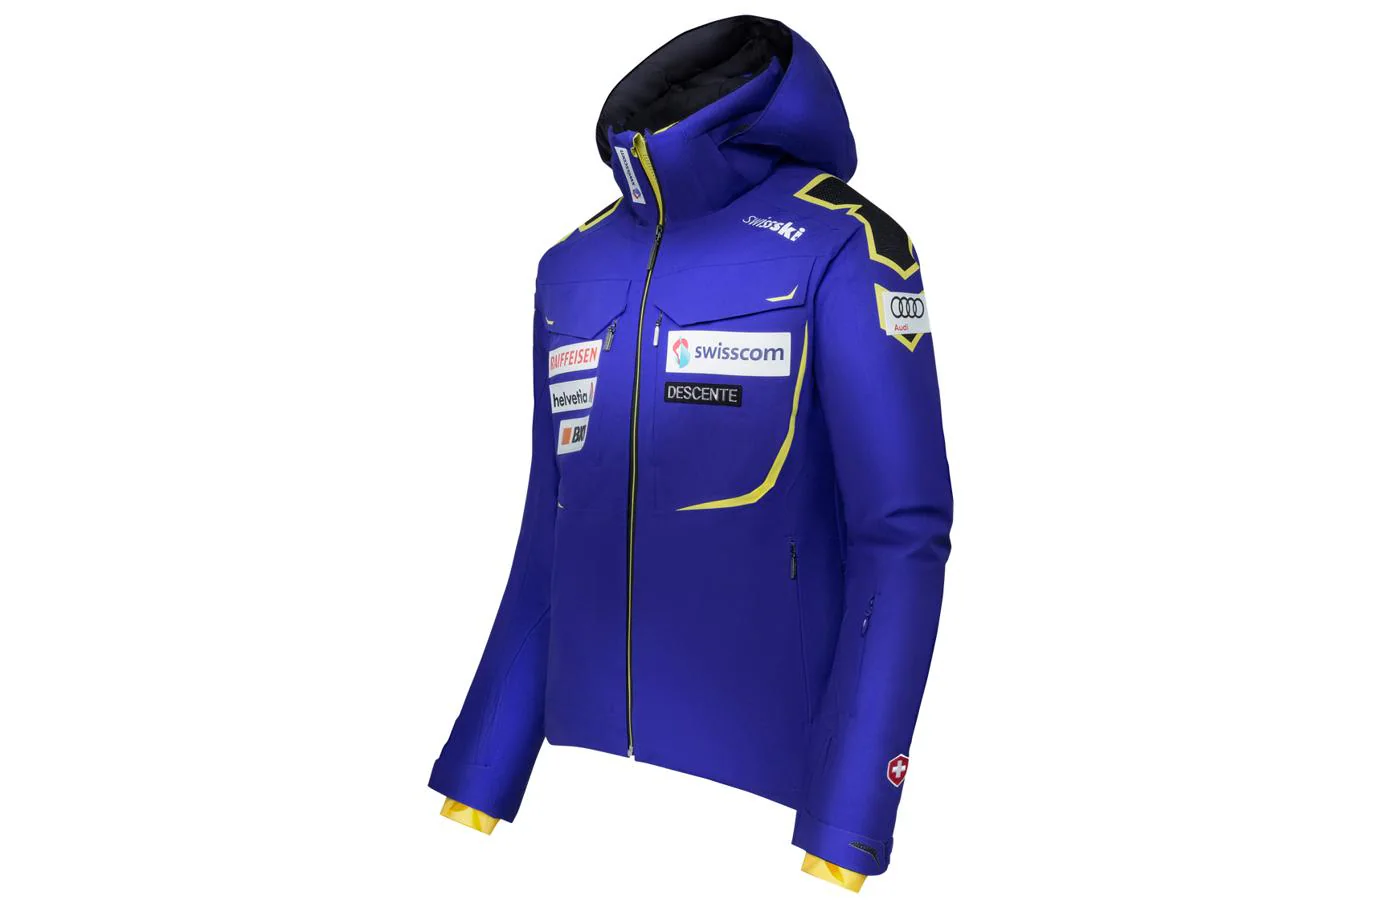 Men's 2L Insulated Jacket. El Equipo Suizo de esquí, ha llevado al desarrollo de esta chaqueta para el equipo. Tiene tecnología D-Laser, varias ranuras para conecar los cascos. Precios: 790 euros